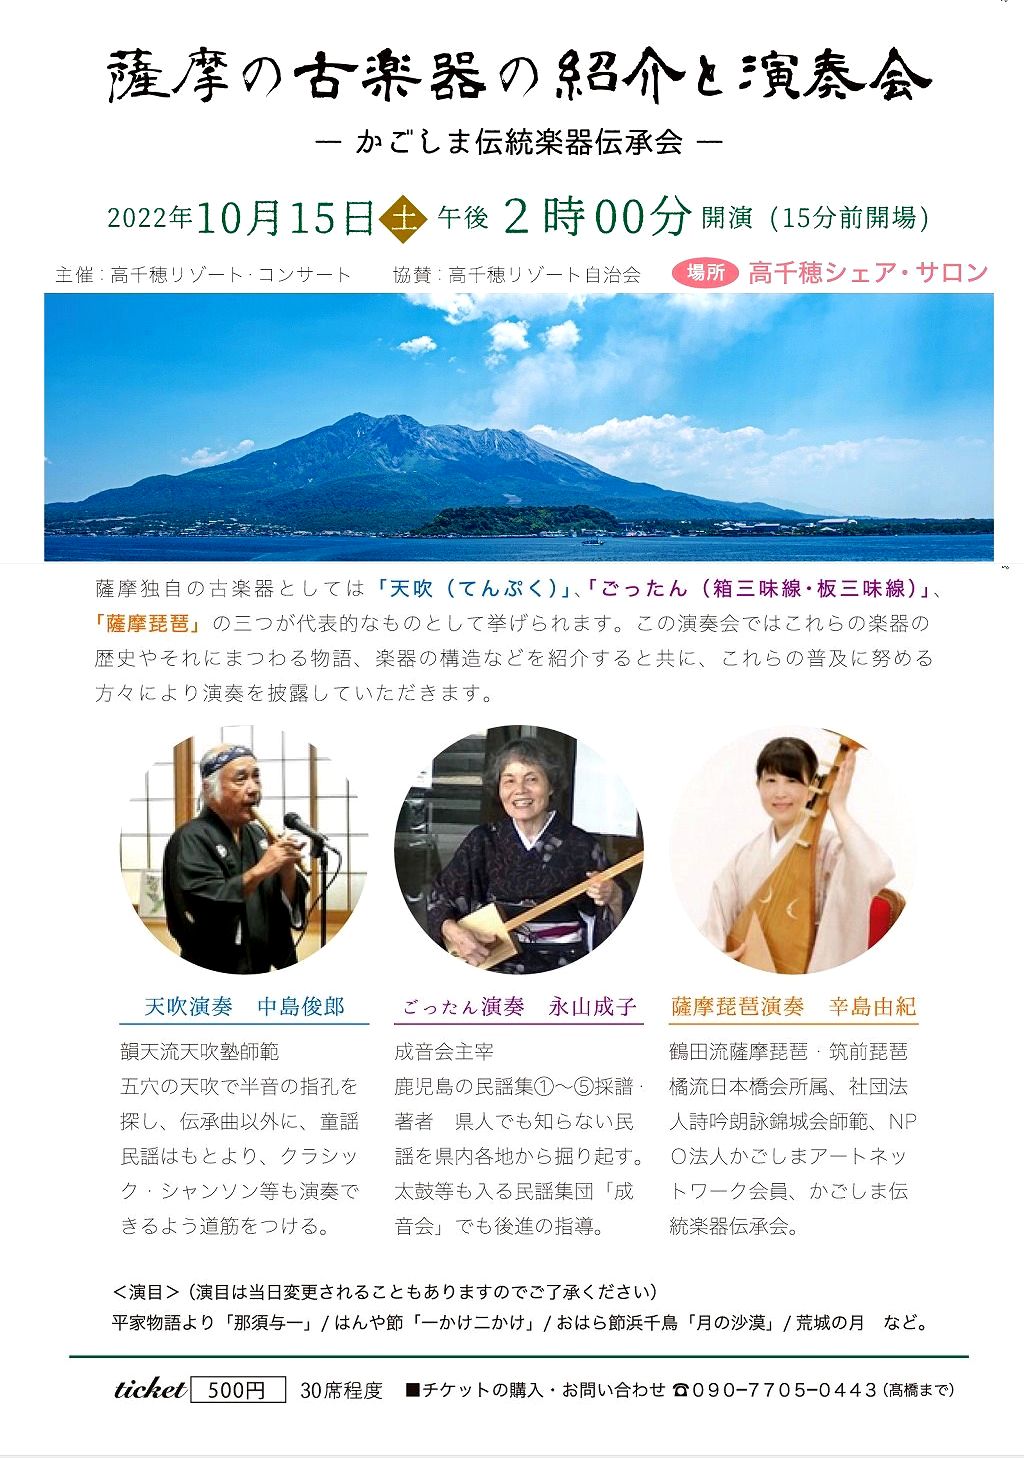 薩摩の古楽器の紹介と演奏会